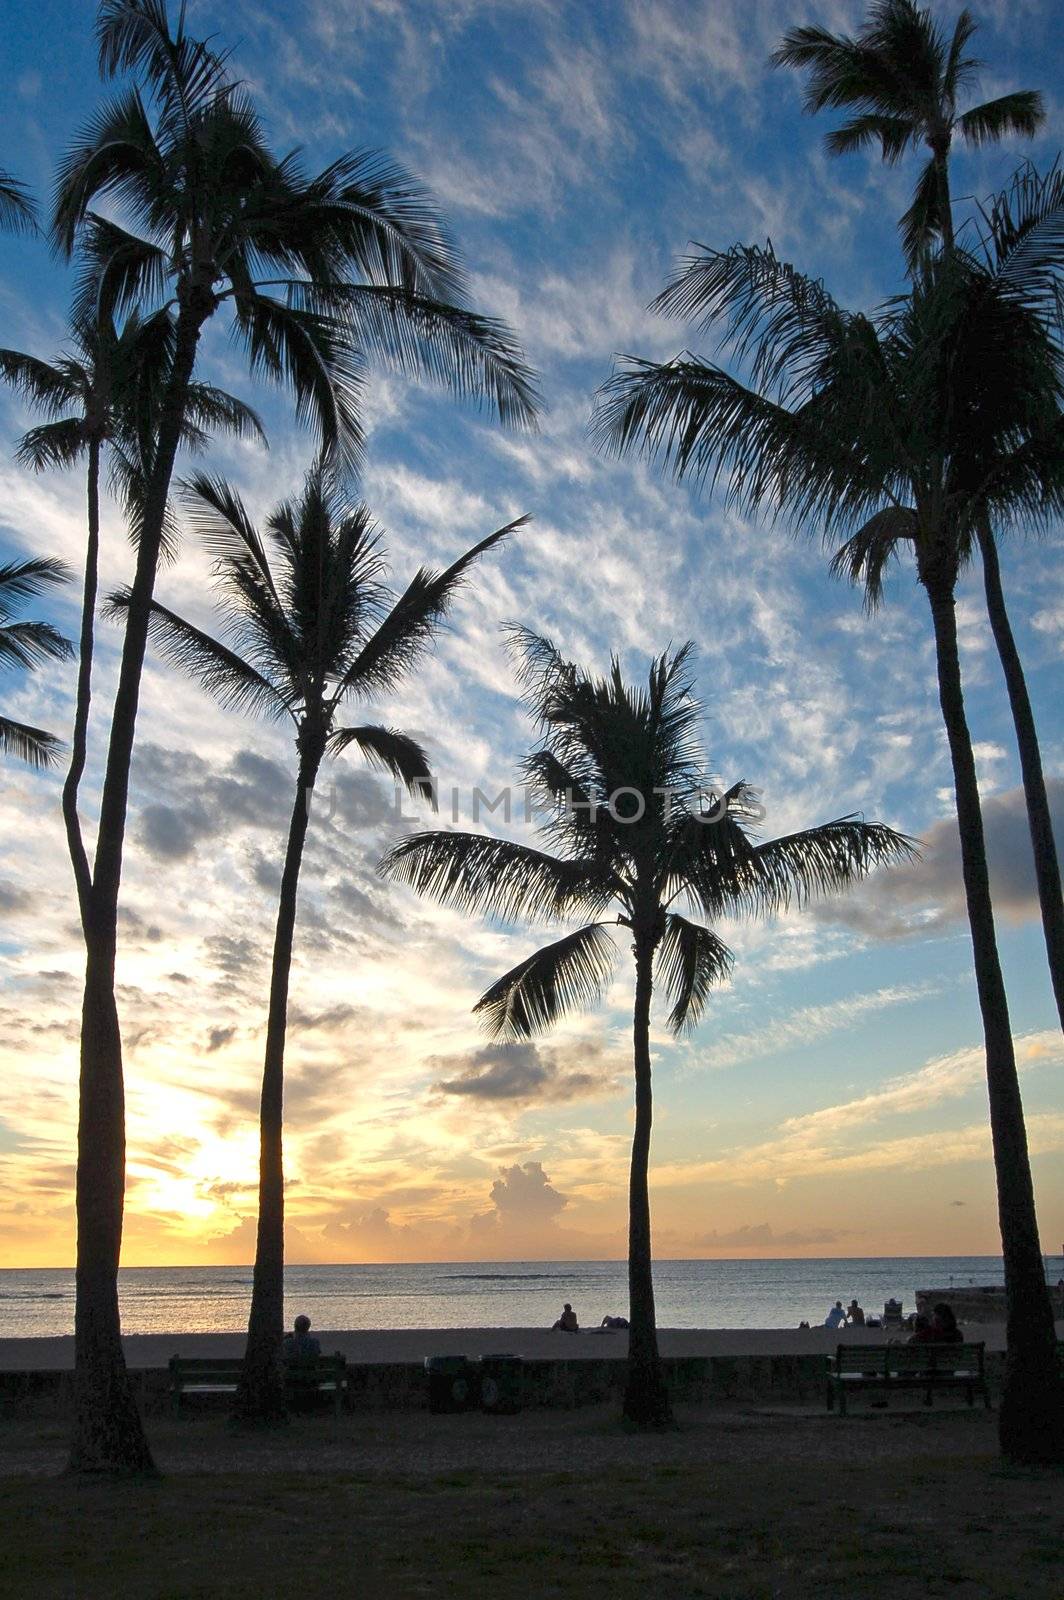 Sunset at Waikiki Beach Honolulu Hawaii USA